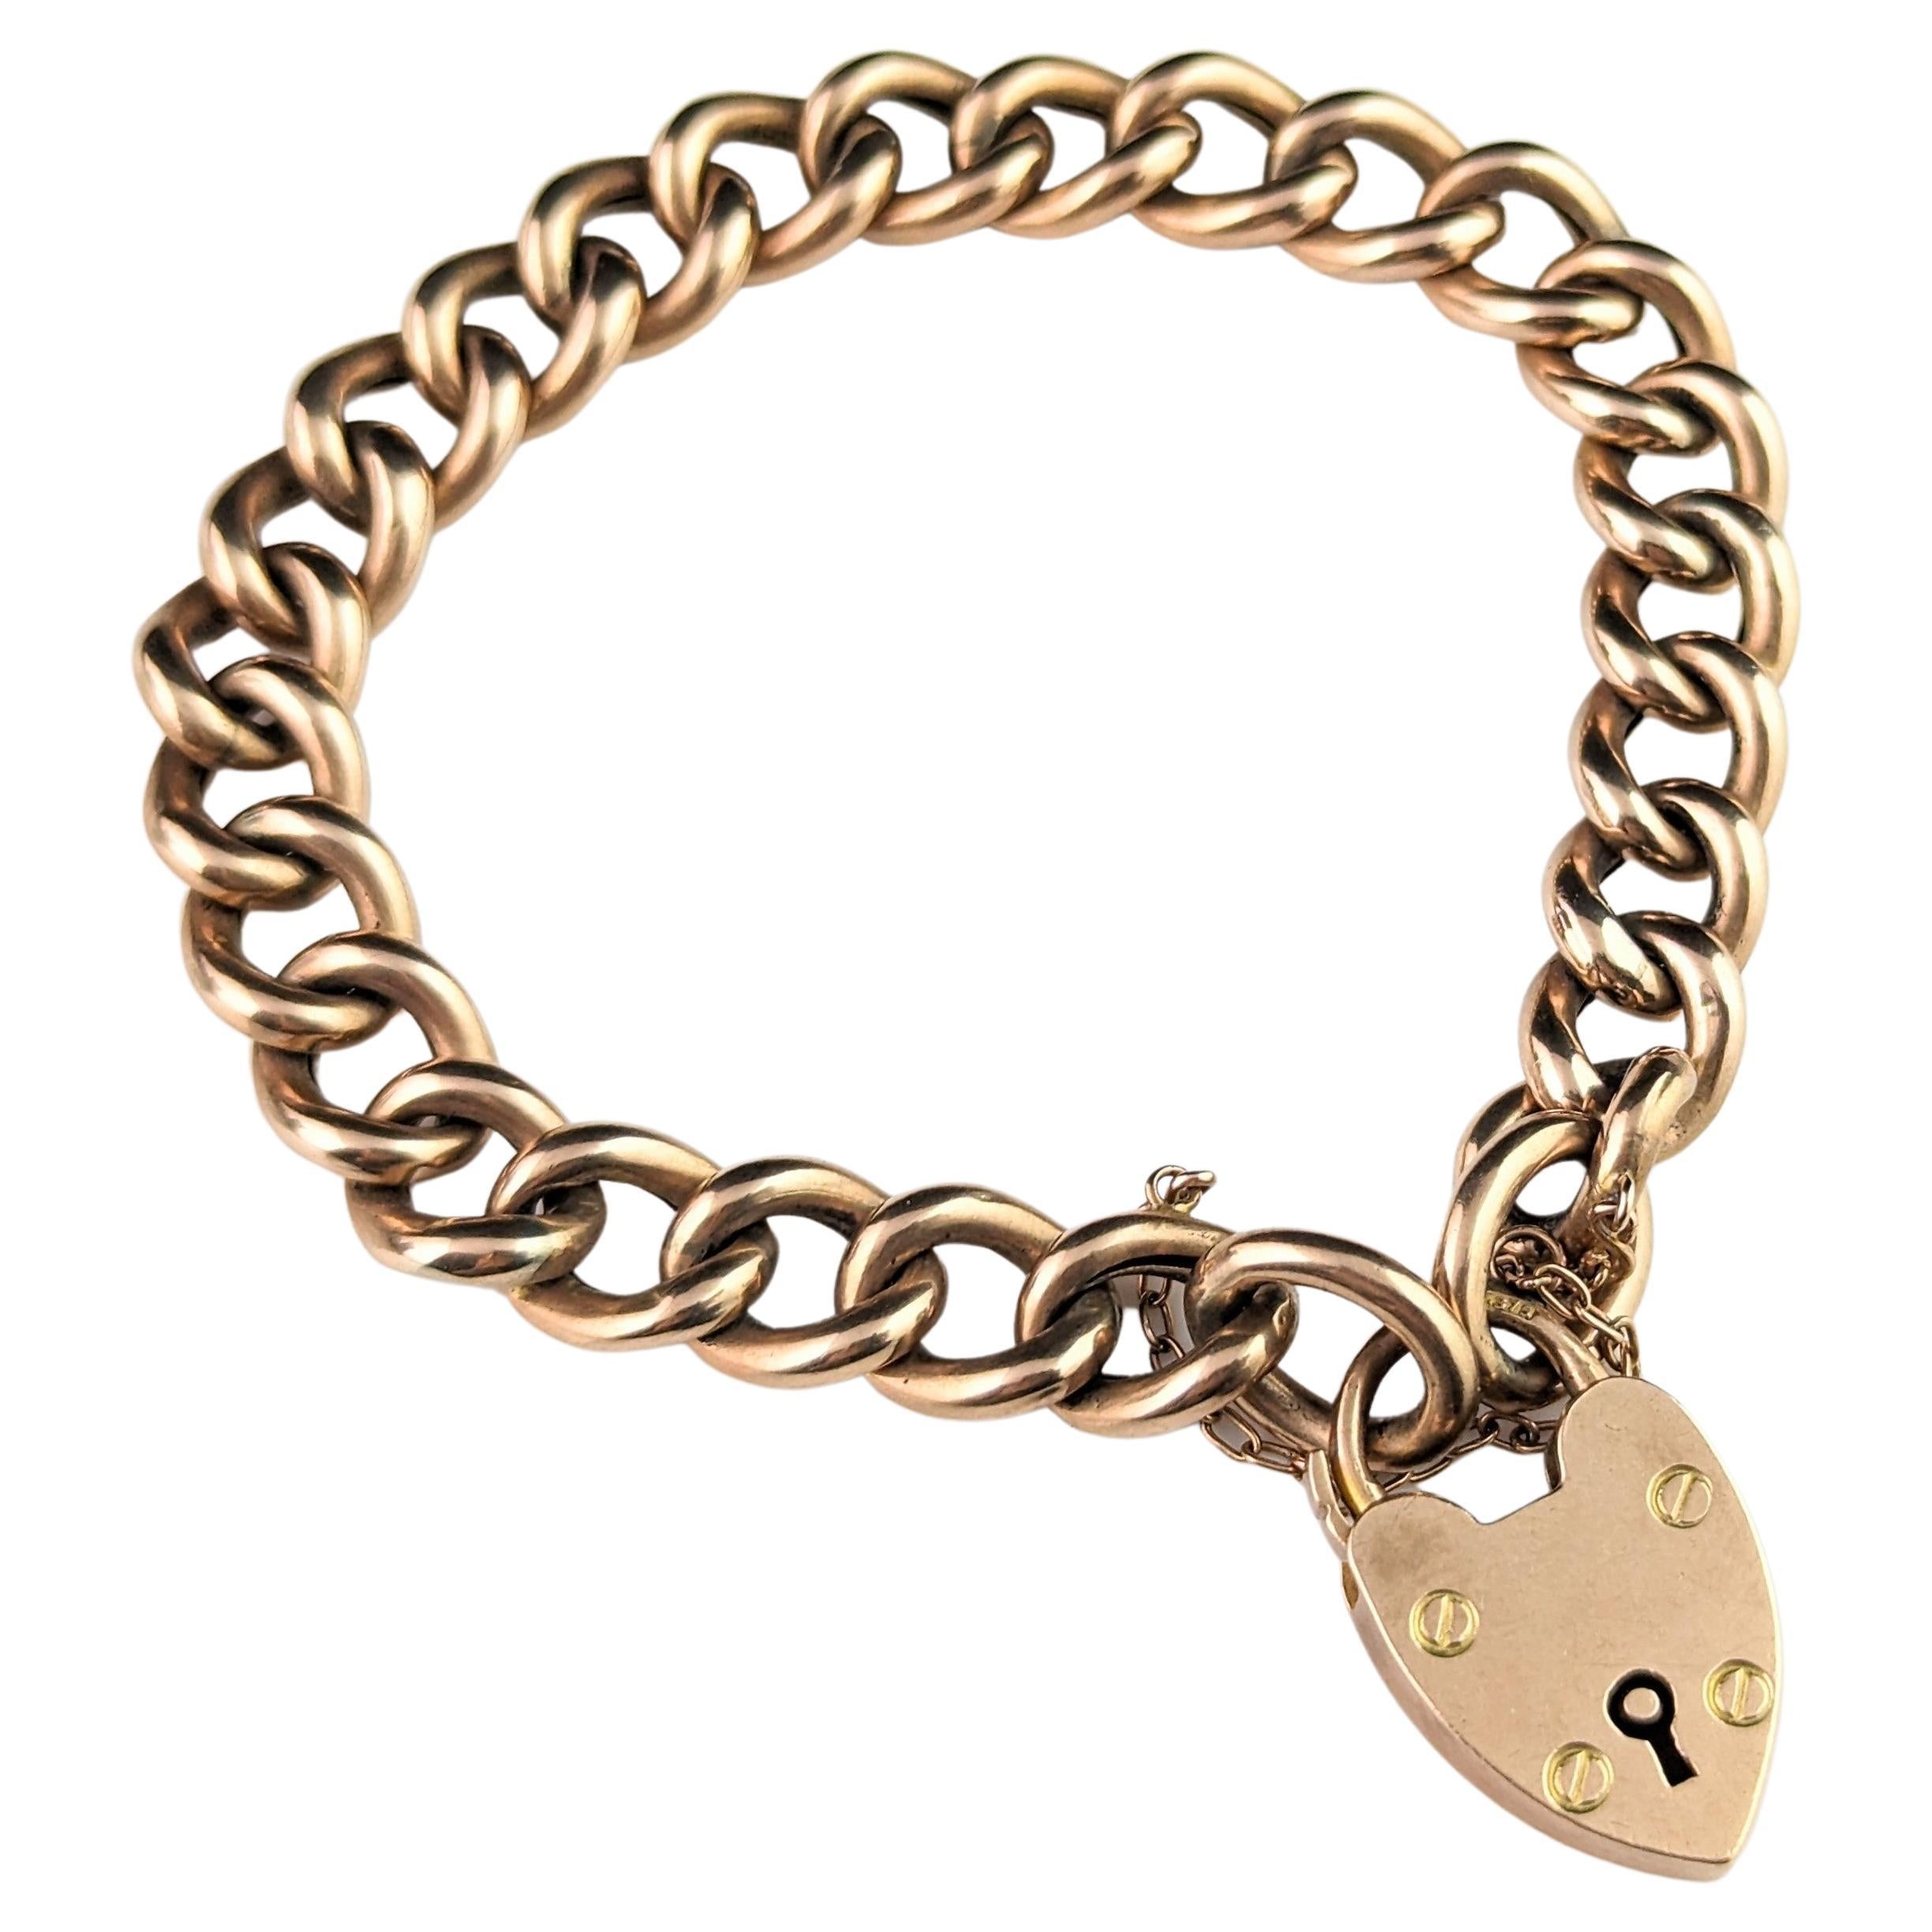 Antique 9ct gold curb link bracelet, Edwardian, Heart padlock 